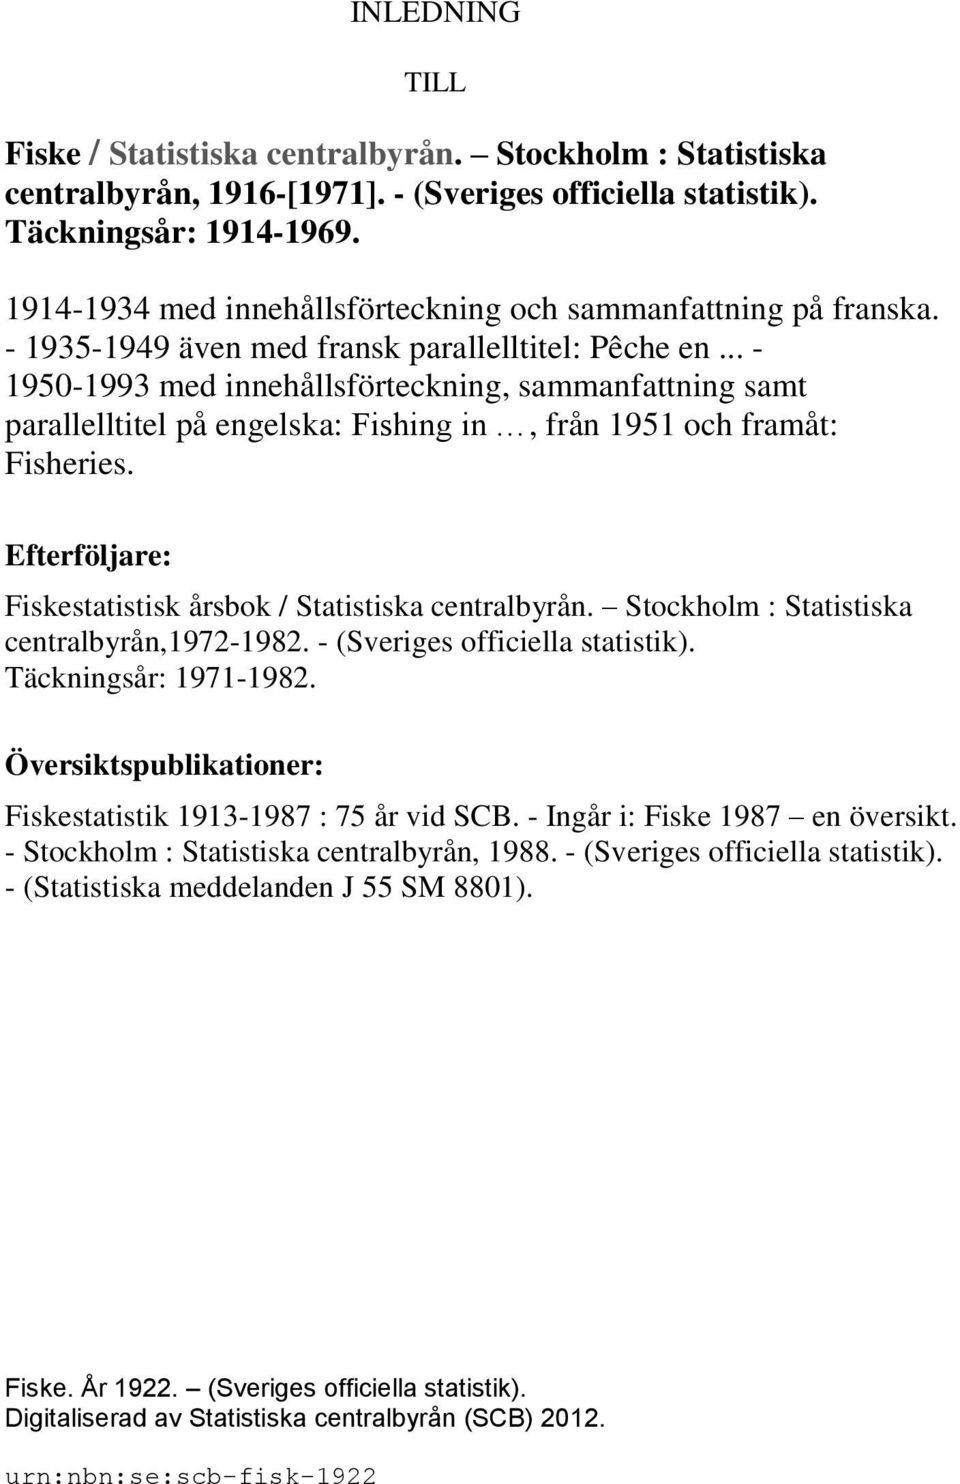 .. - 1950-1993 med innehållsförteckning, sammanfattning samt parallelltitel på engelska: Fishing in, från 1951 och framåt: Fisheries. Efterföljare: Fiskestatistisk årsbok / Statistiska centralbyrån.